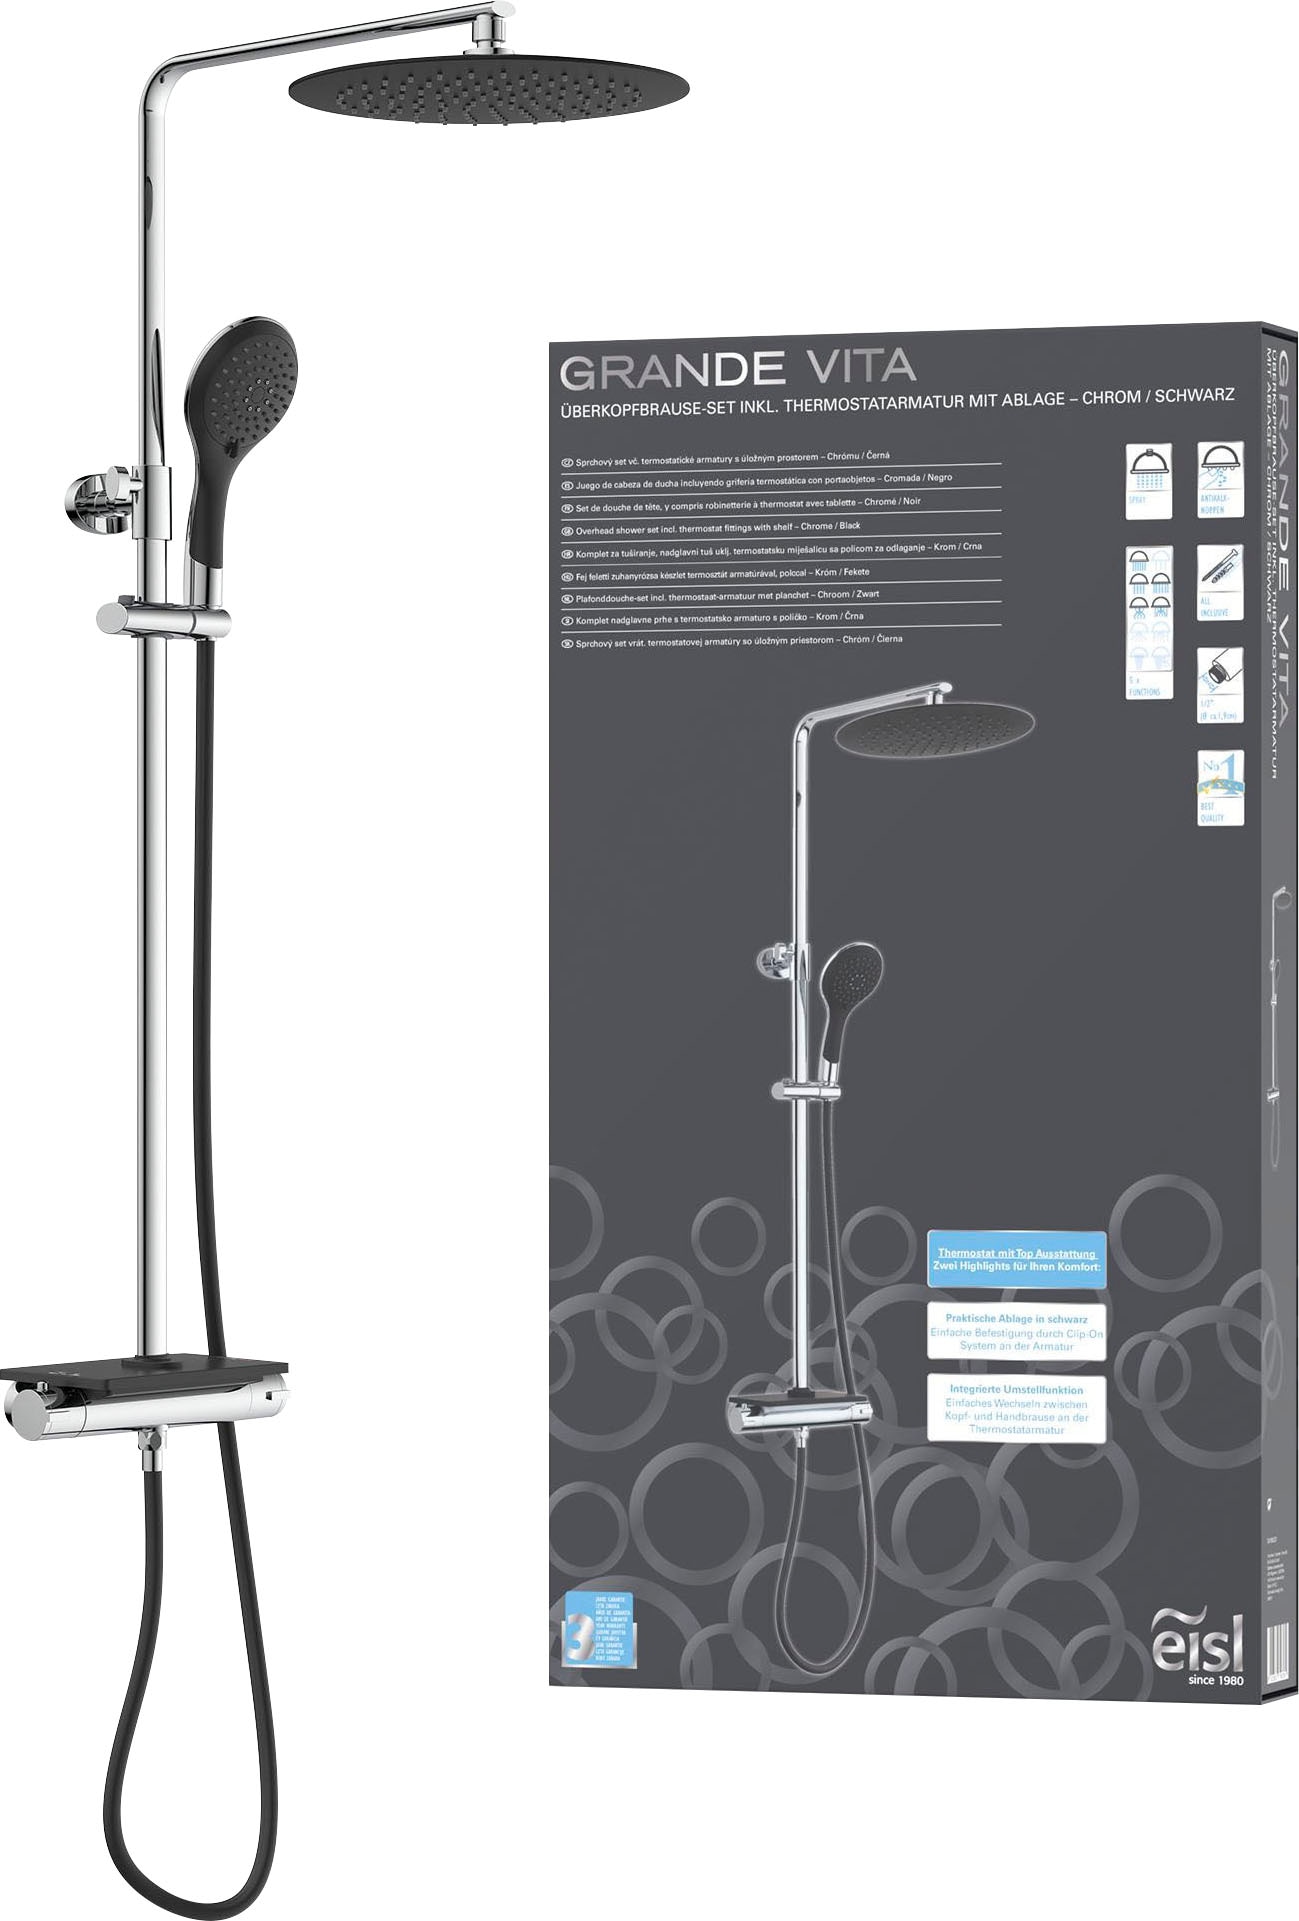 Eisl Brausegarnitur "Grande Vita", Duschsystem mit Thermostat und Ablage, Regendusche mit Wandhalterung